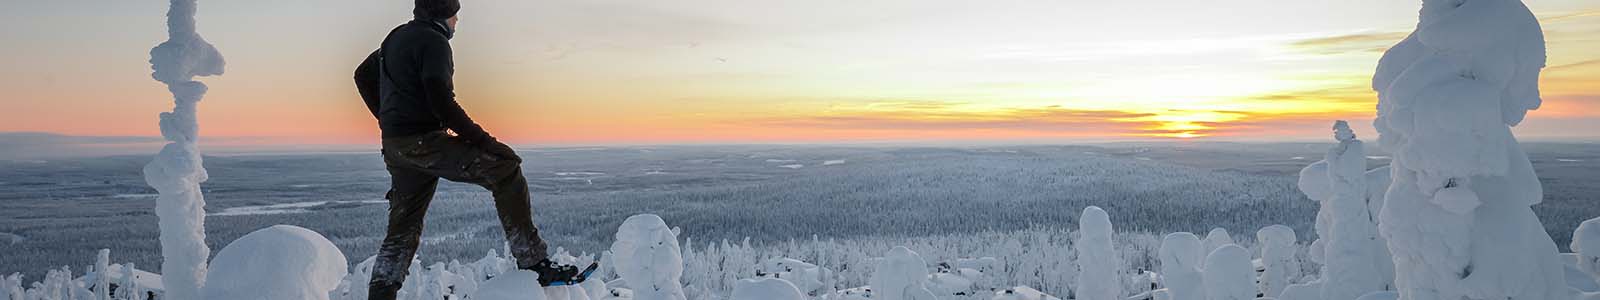 Zo ga je verantwoord op vakantie naar winters Lapland of Noord-Noorwegen